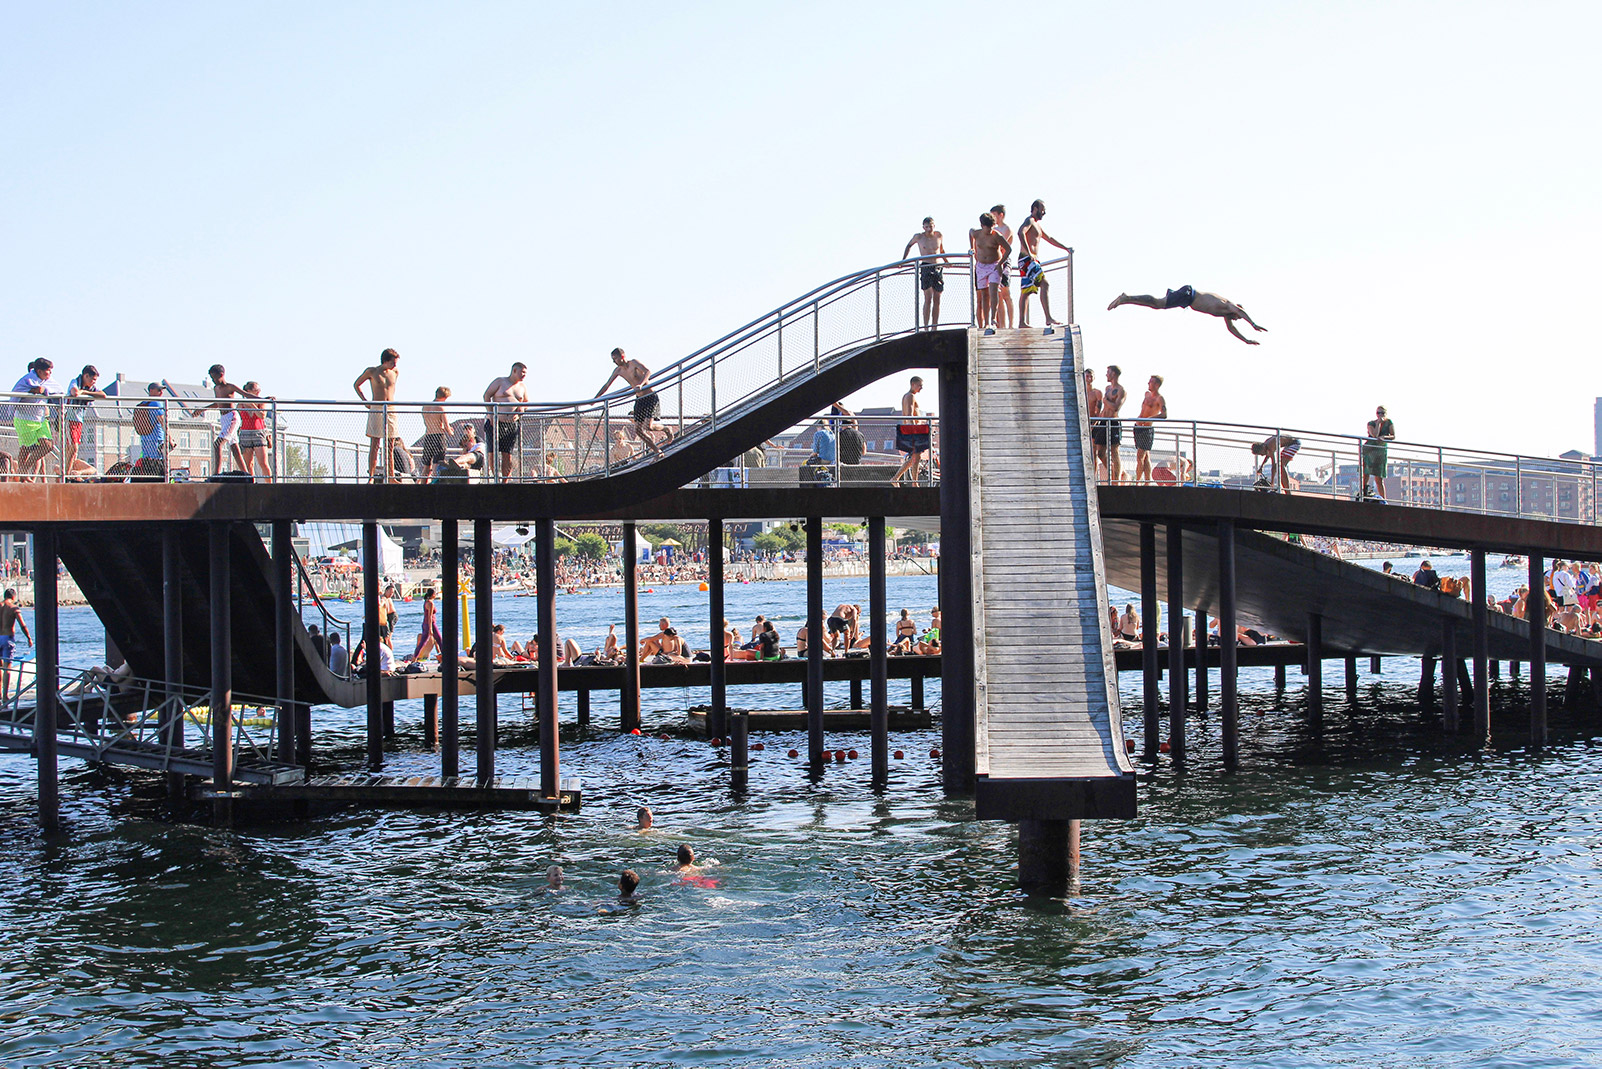 Copenhagen's harbour baths